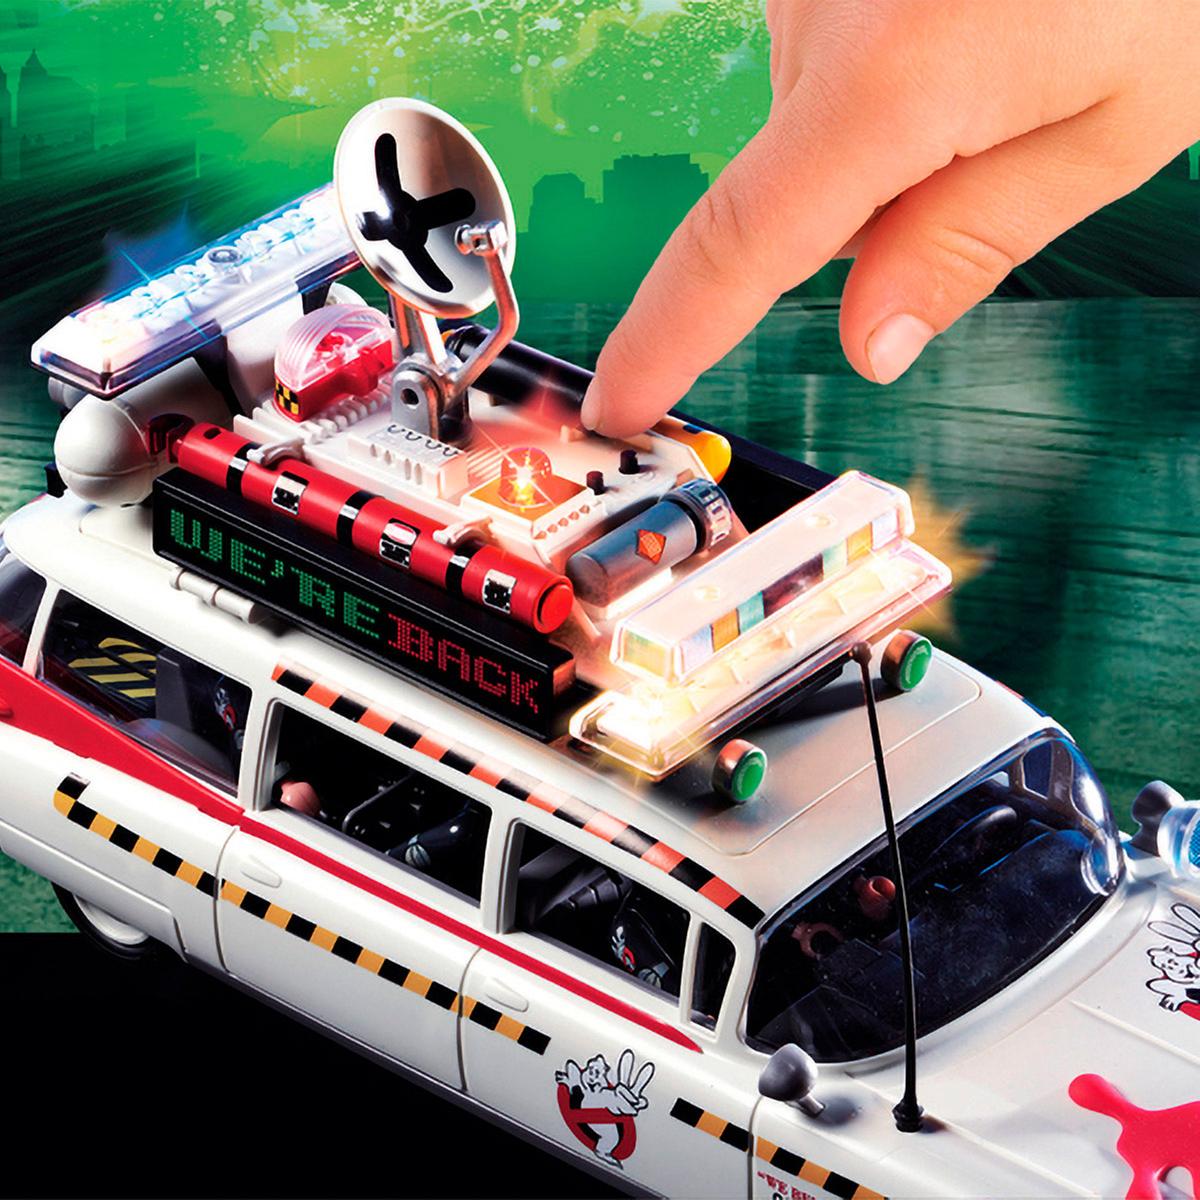 Playmobil - Ecto-1A Ghostbusters - 70170 | Playmobil Cazafantasmas | Toys"R" Us España